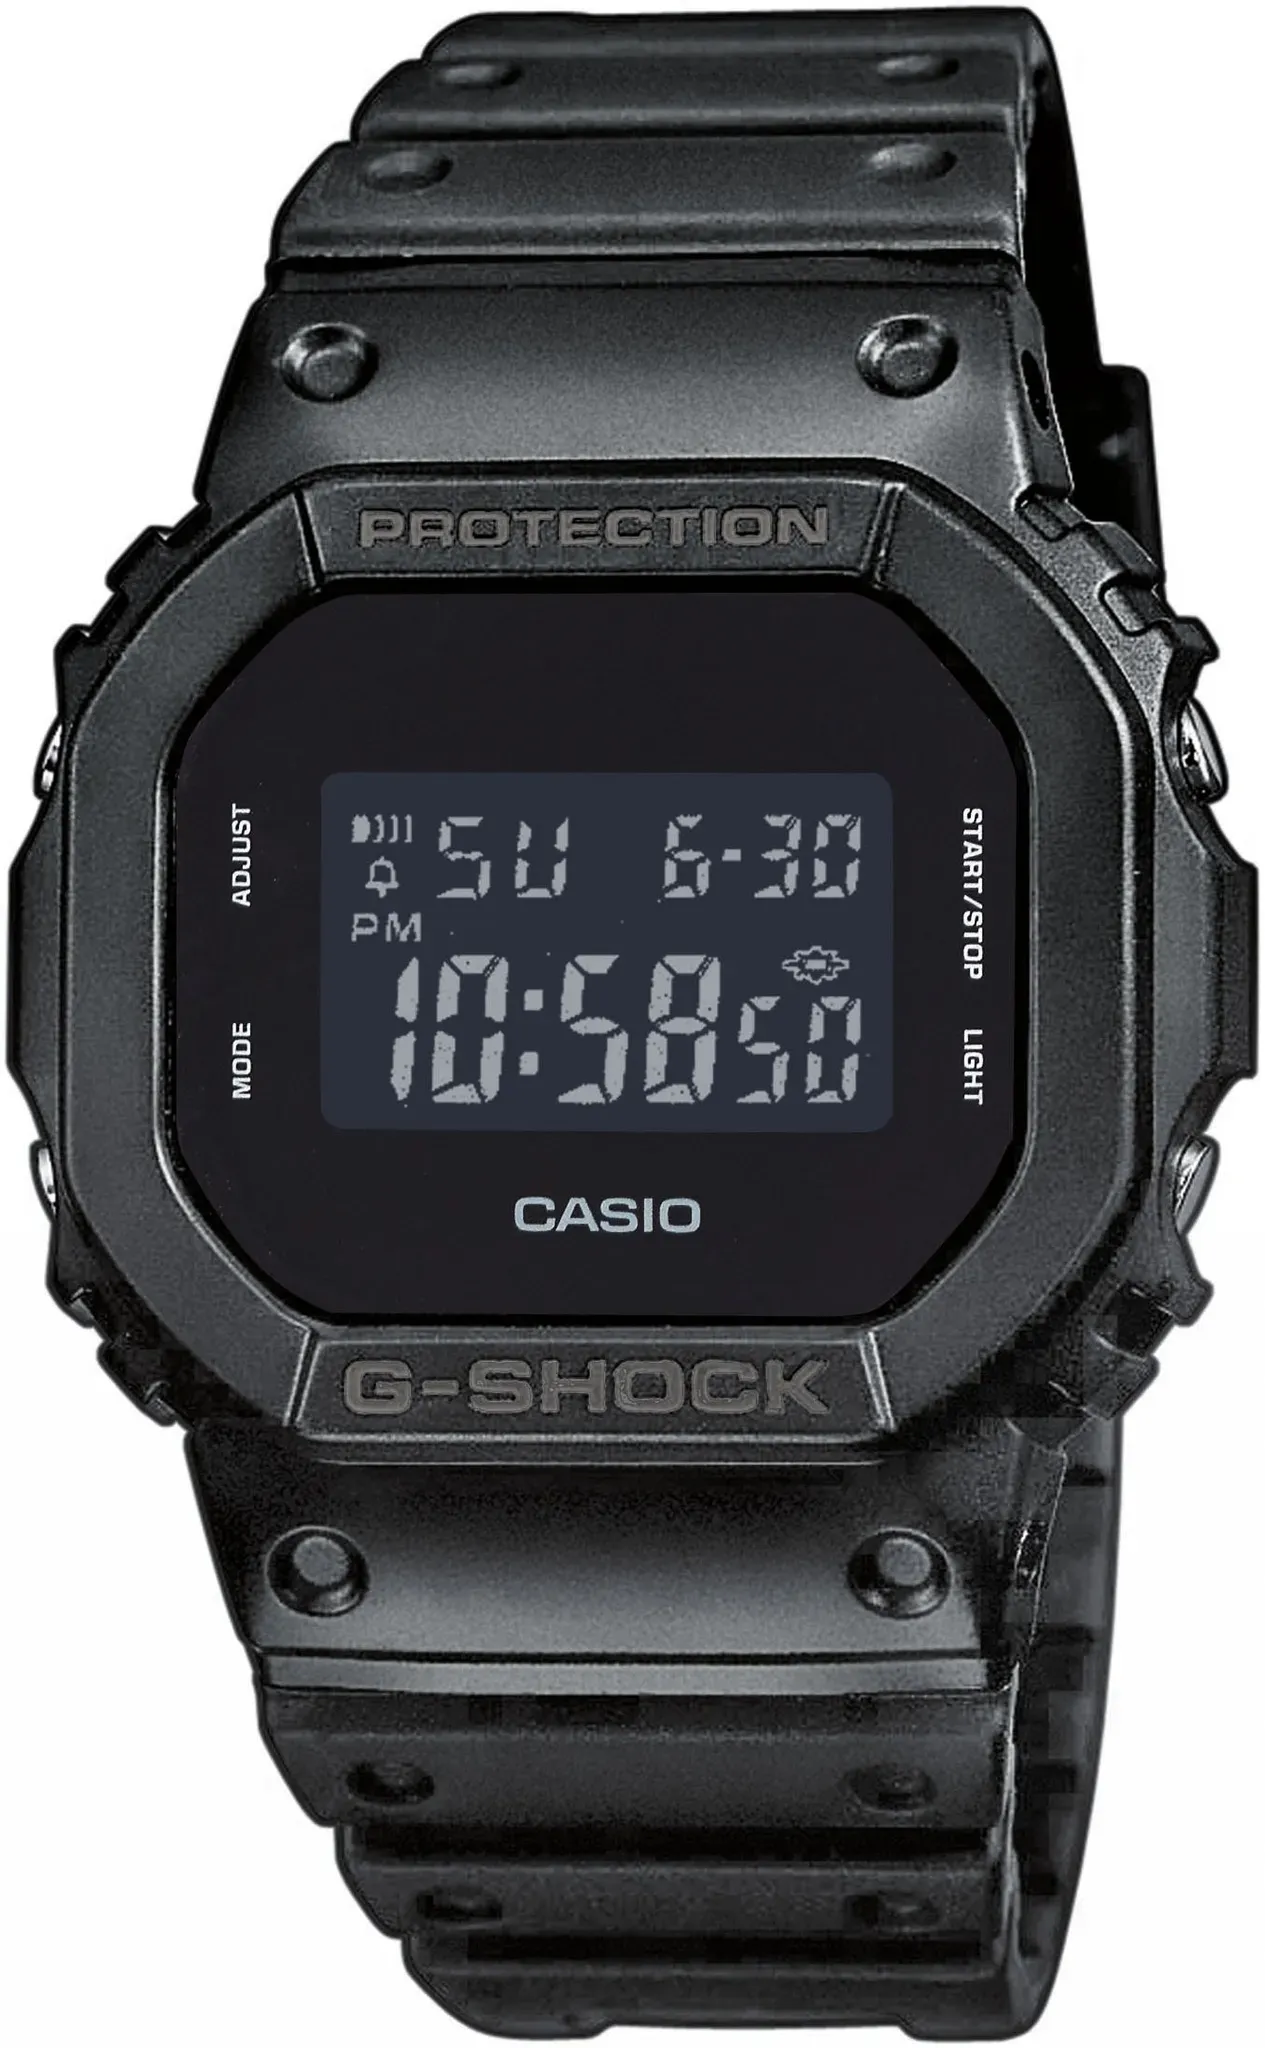 Chronograph CASIO G-SHOCK Armbanduhren schwarz (schwarz, schwarz) Herren Quarzuhren Quarzuhr, Armbanduhr, Herrenuhr, digital,retro,bis 20 bar wasserdicht